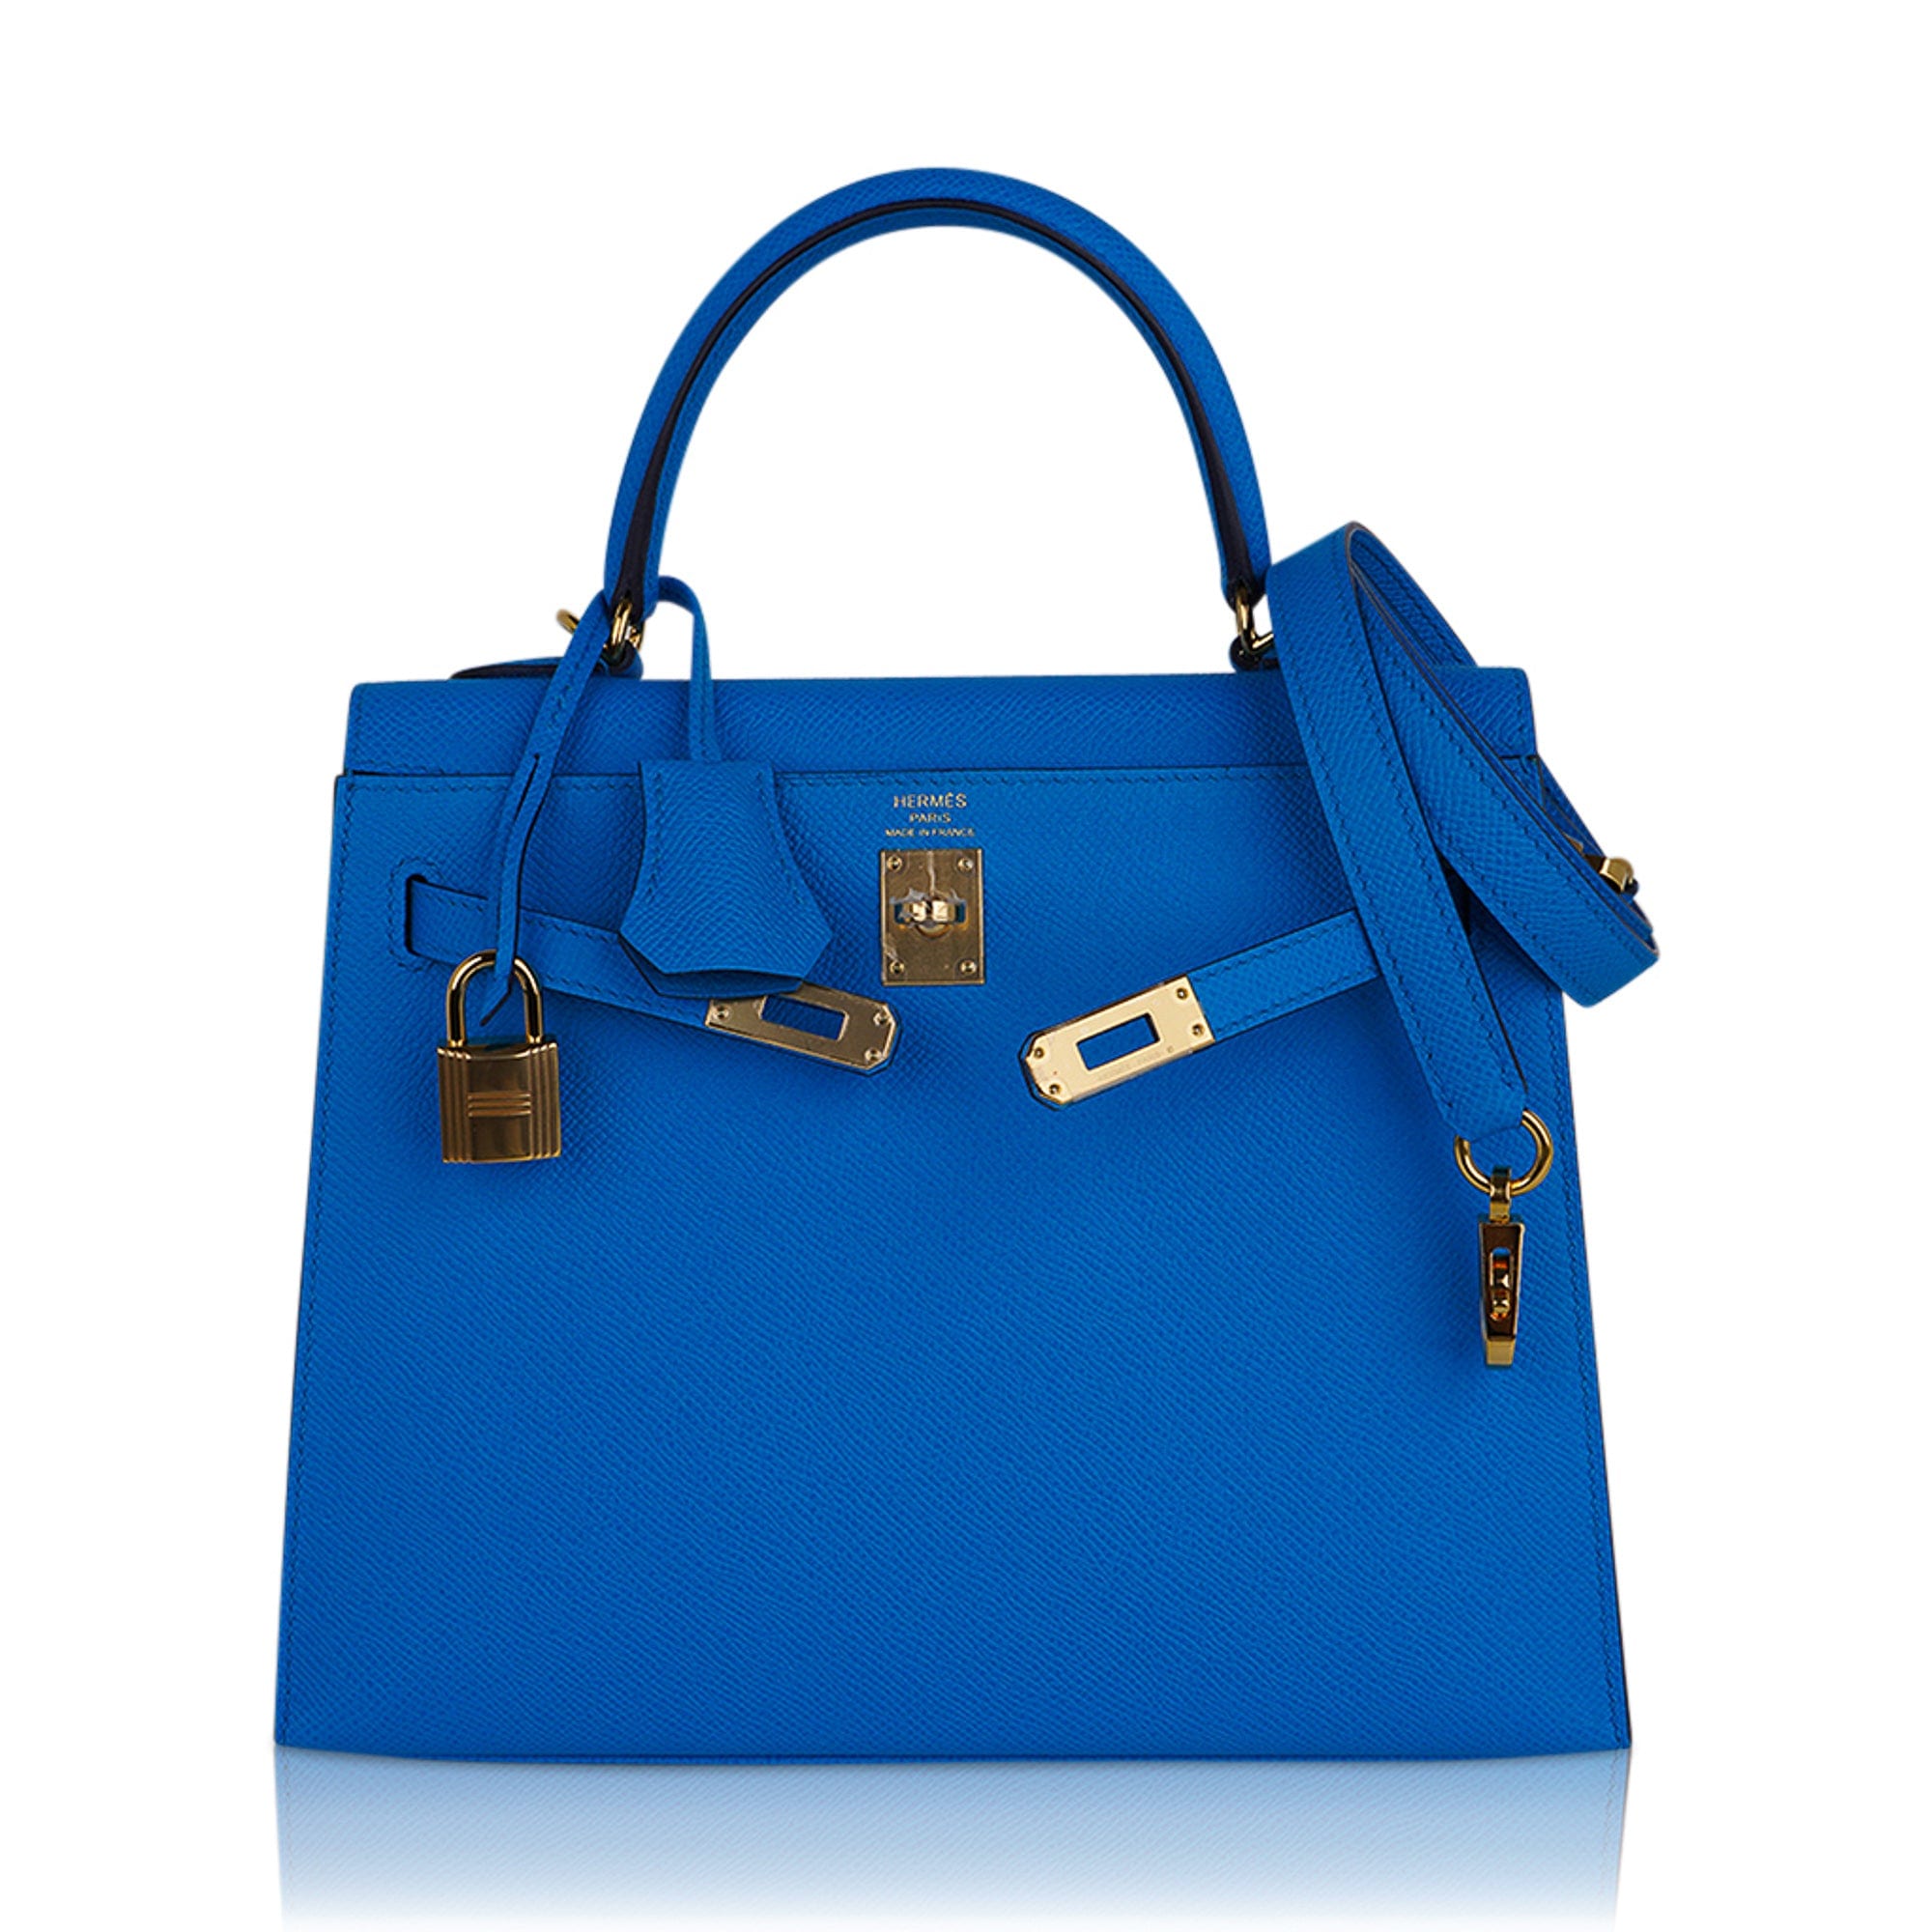 Hermes Birkin bag 25 Blue zanzibar Togo leather Gold hardware